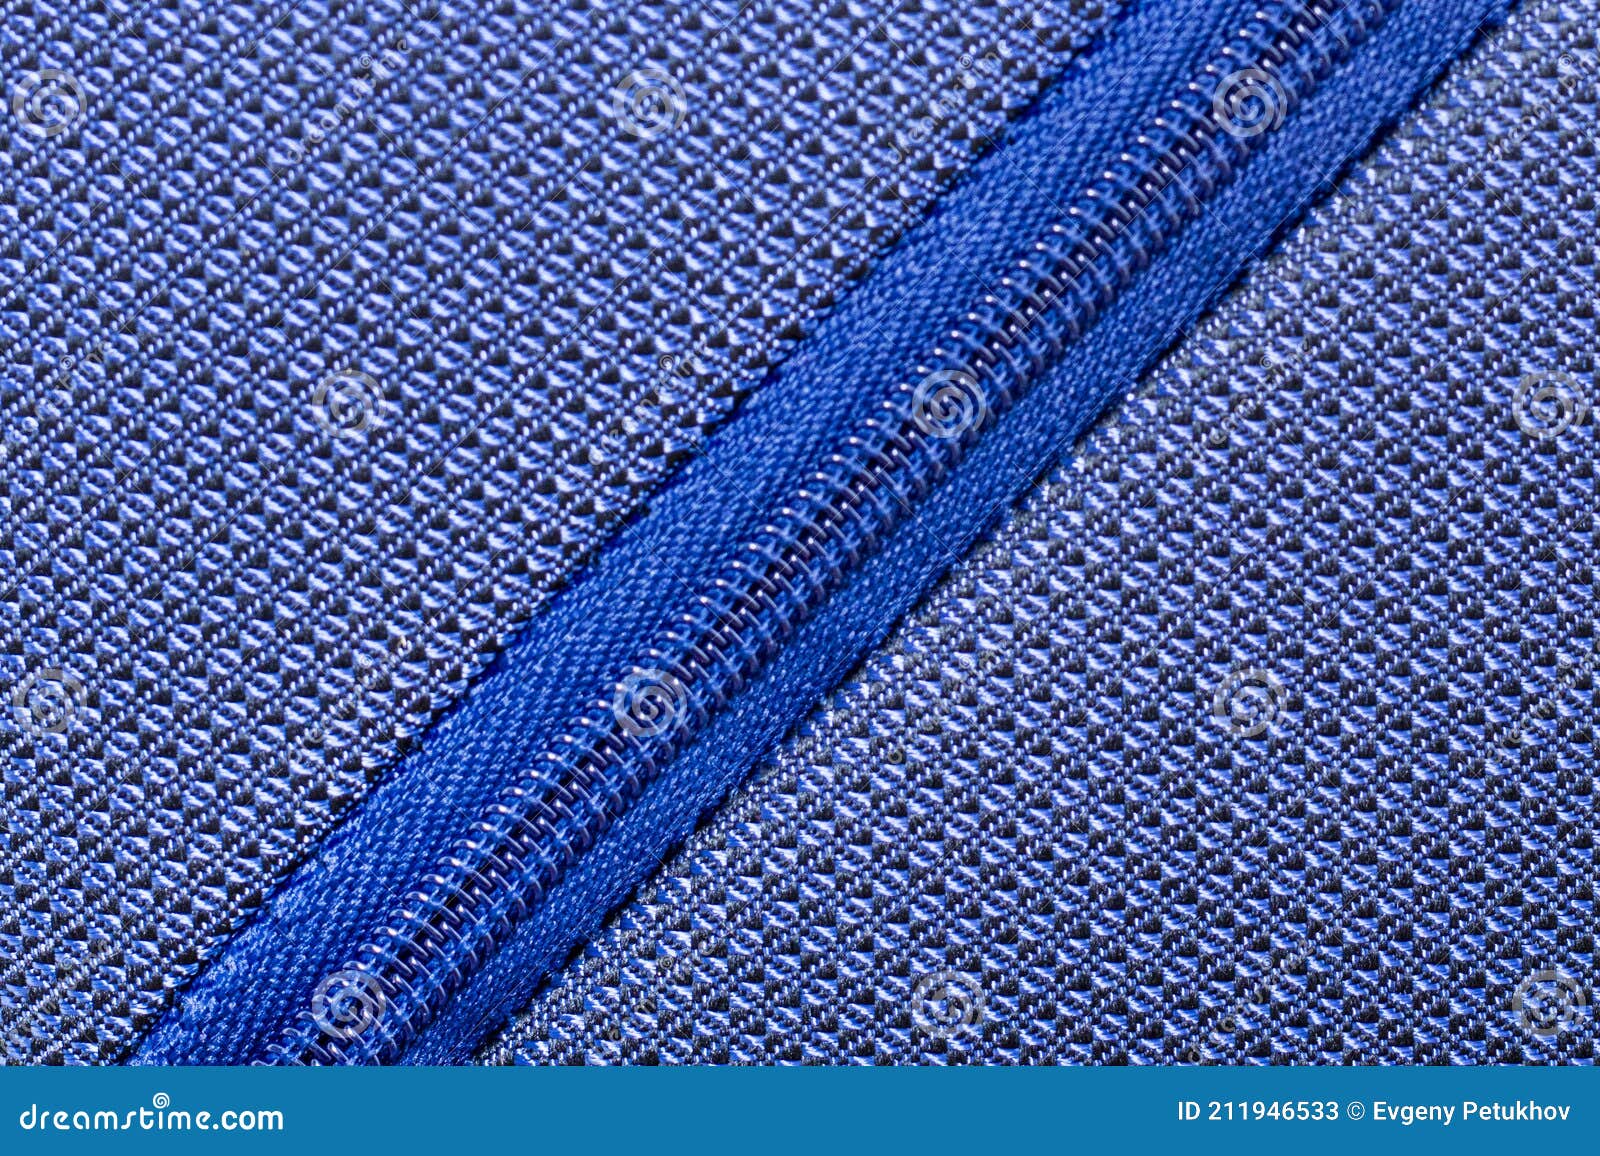 Cremallera Azul Para Bolsas De Ropa Para La Producción De Prendas De Vestir. Rollo De Cremallera De Plástico En Diagonal Imagen de archivo - Imagen de textura, 211946533